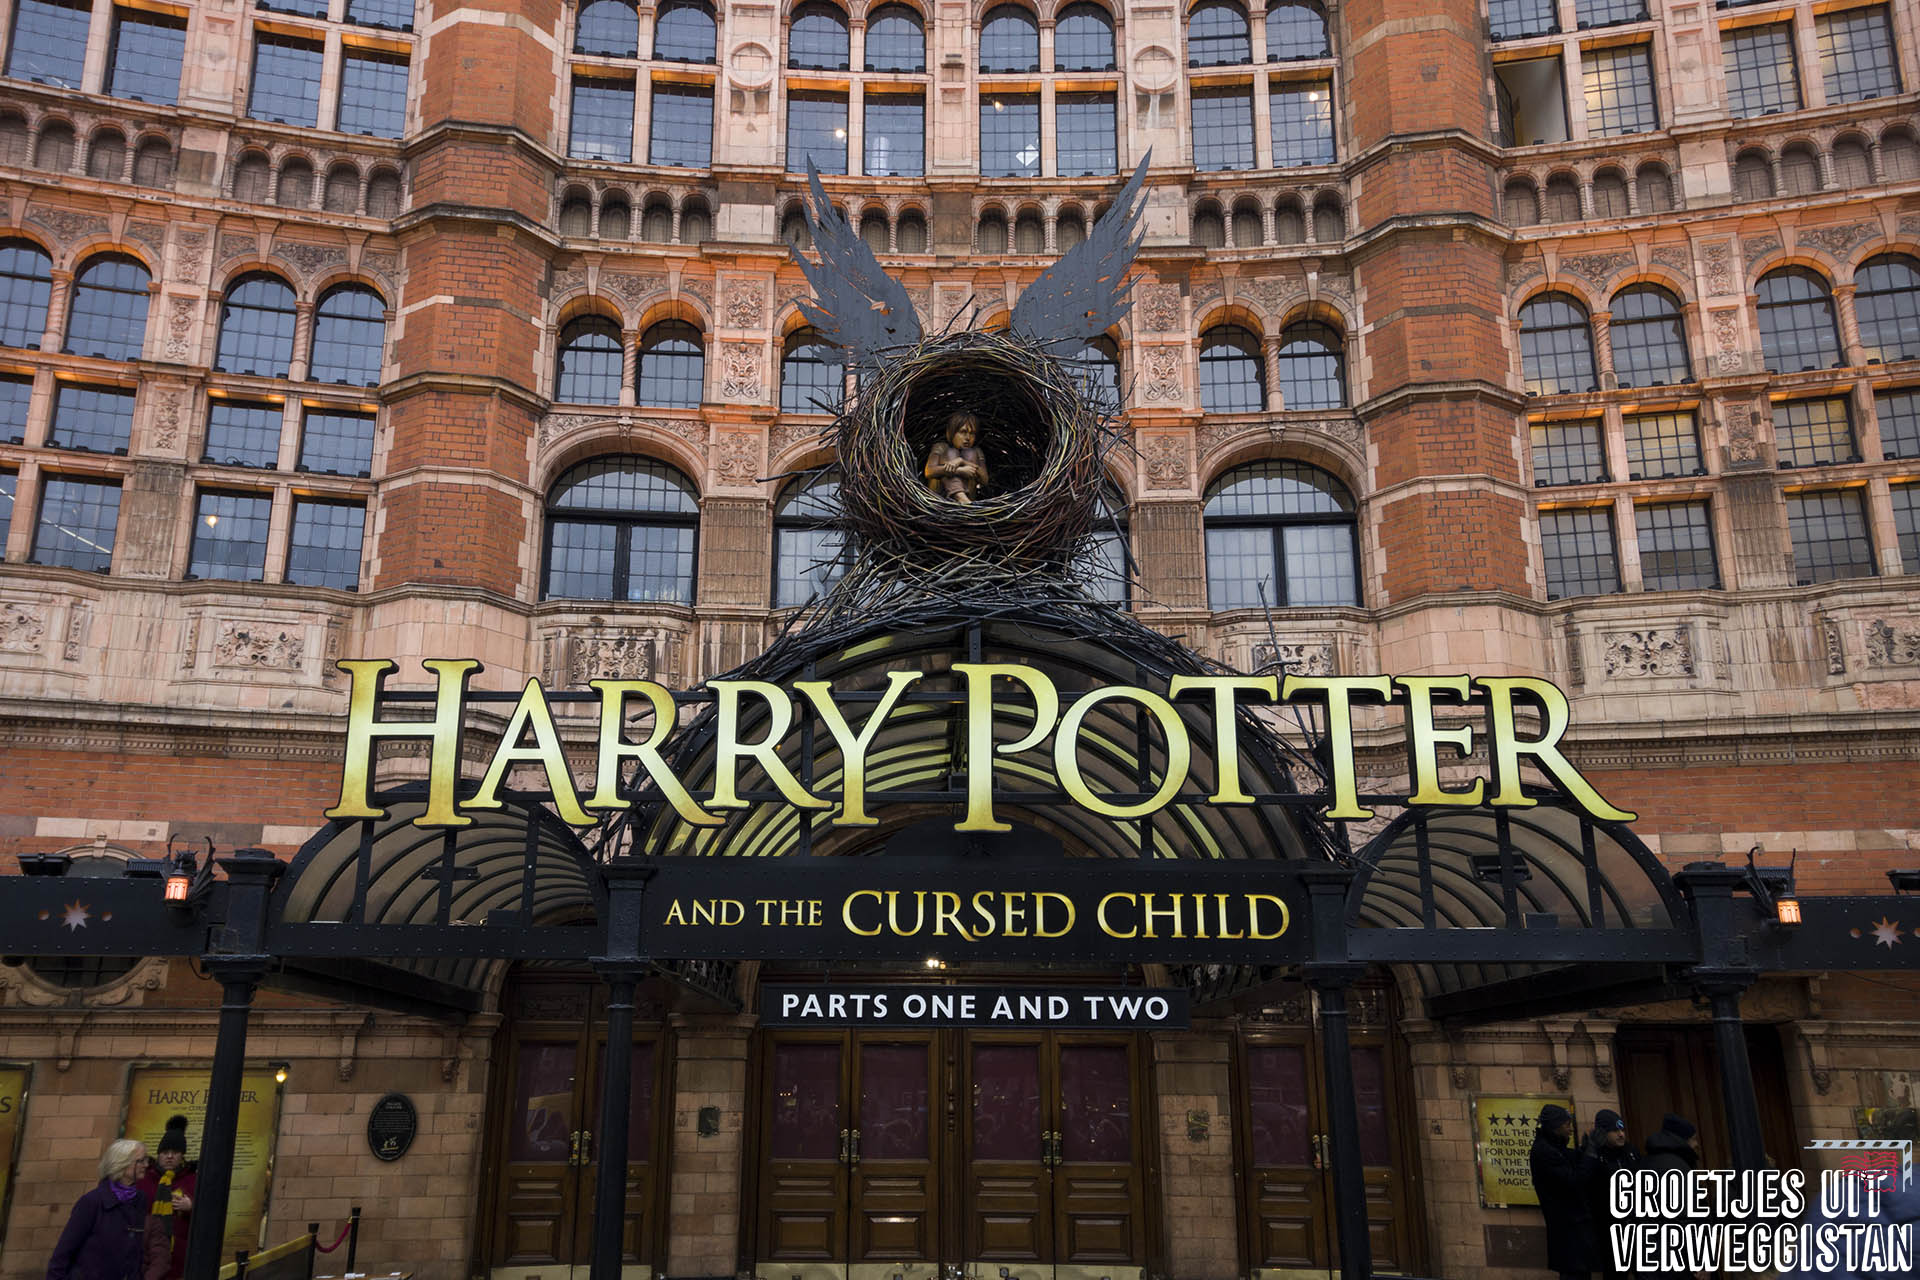 Voorzijde van het theater van Harry Potter and the Cursed Child in Londen